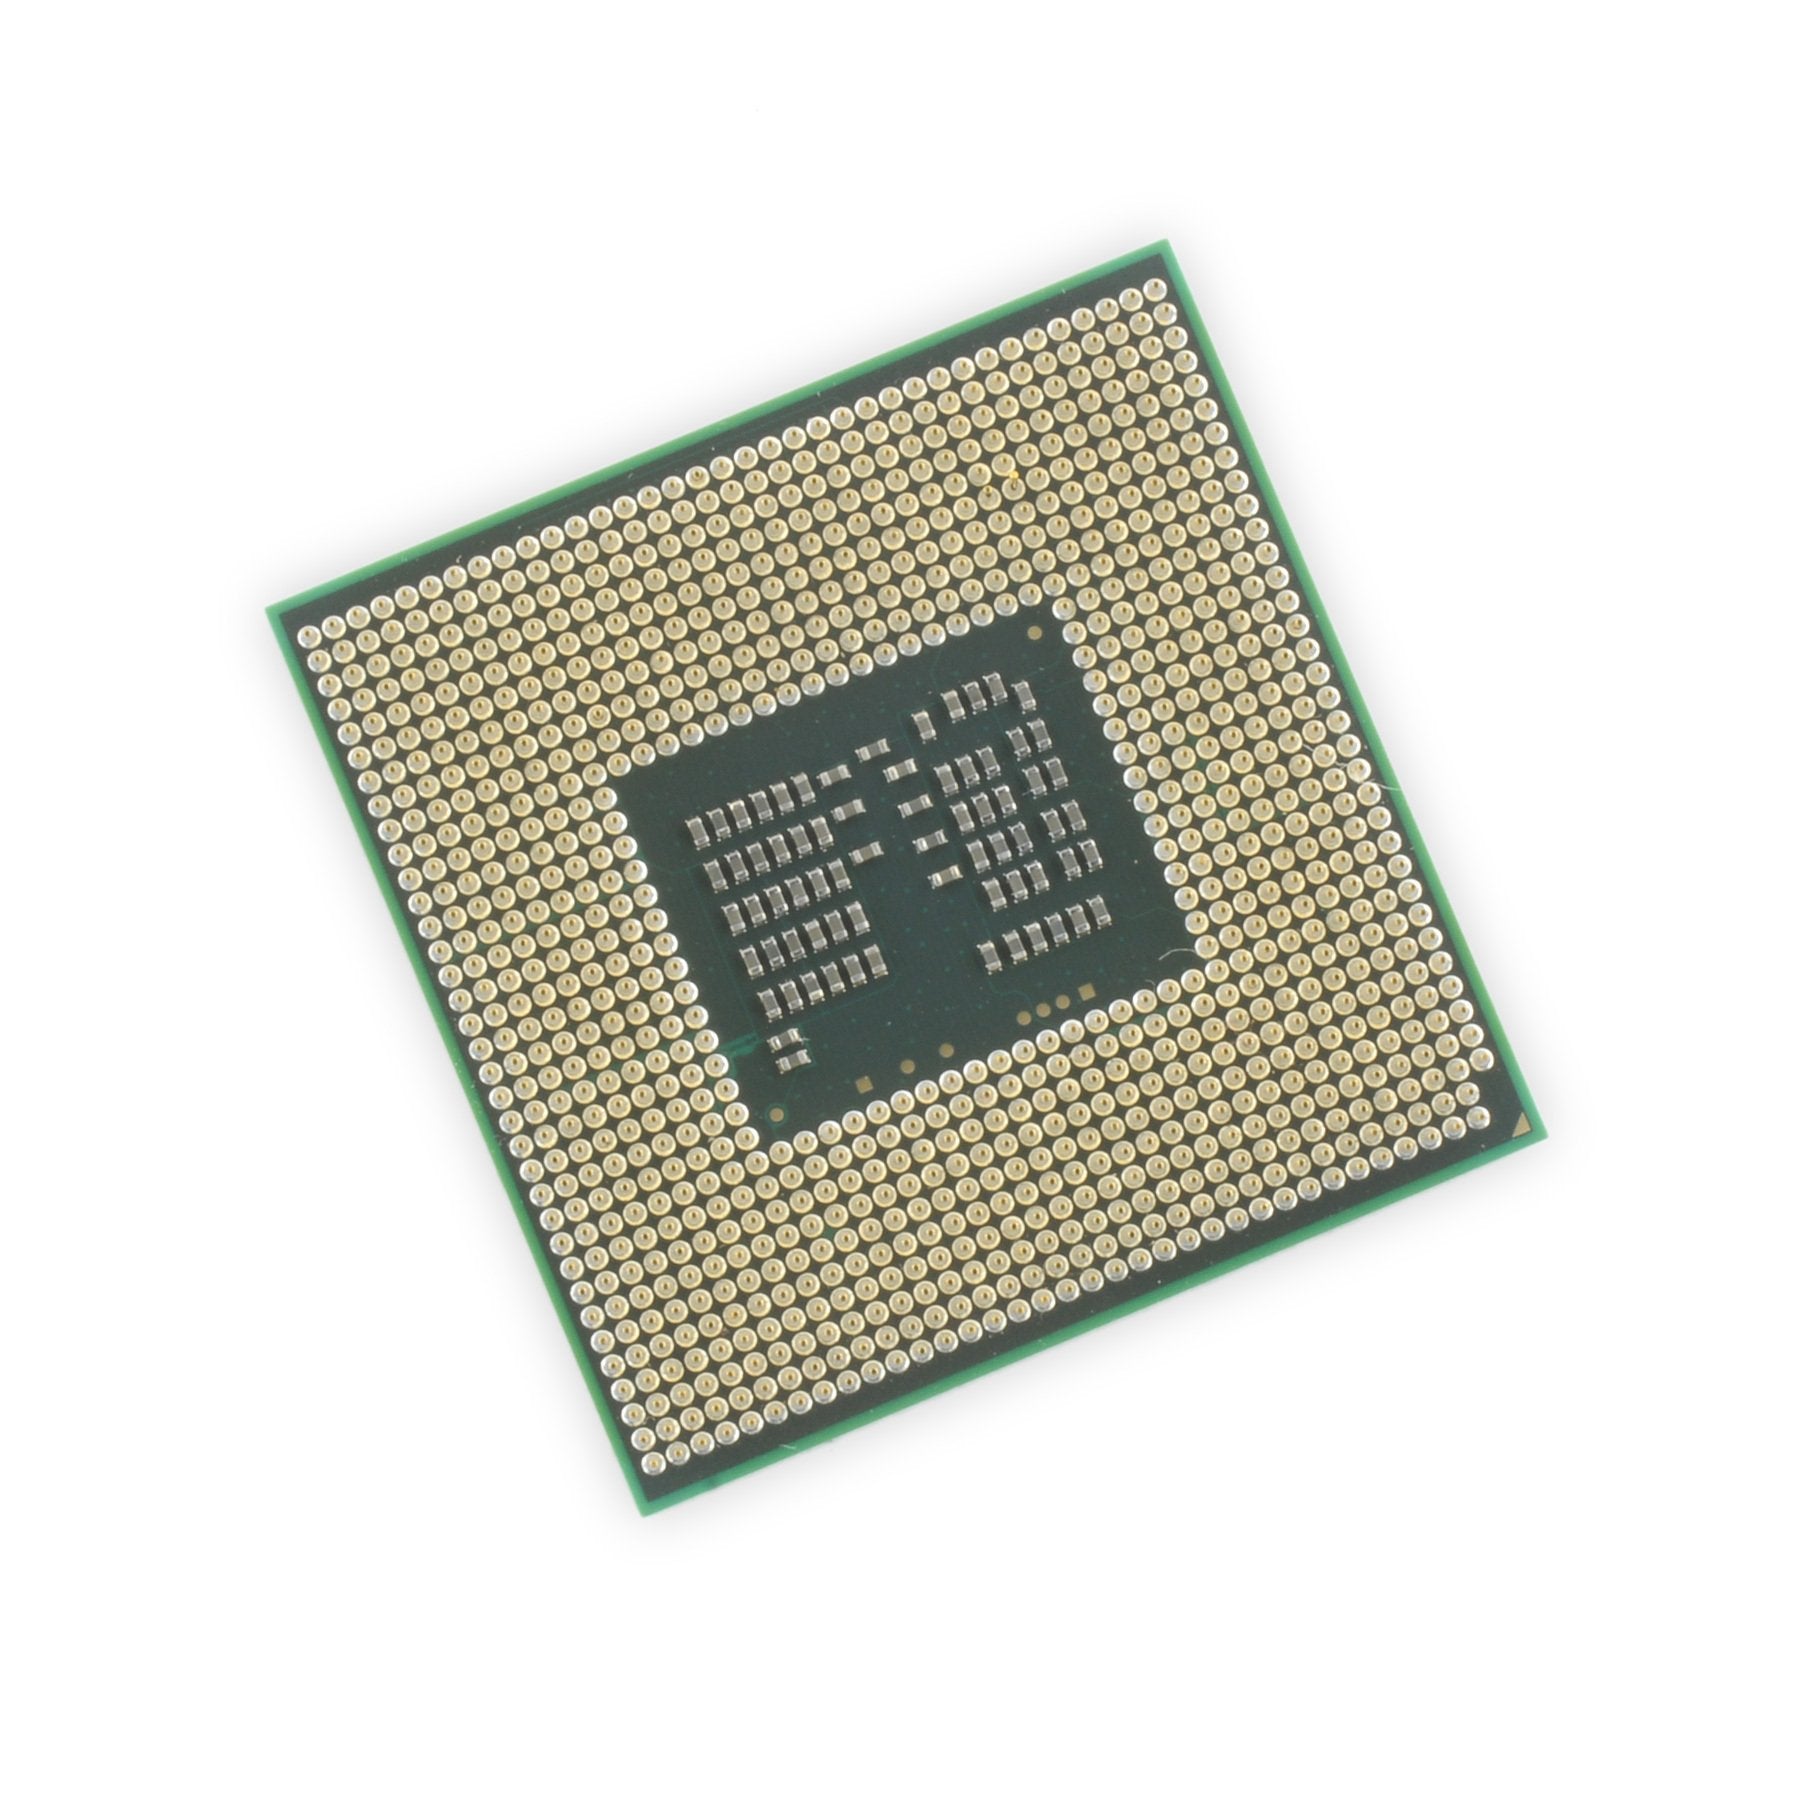 Inspiron 14R (N4010) 2.0 GHz CPU